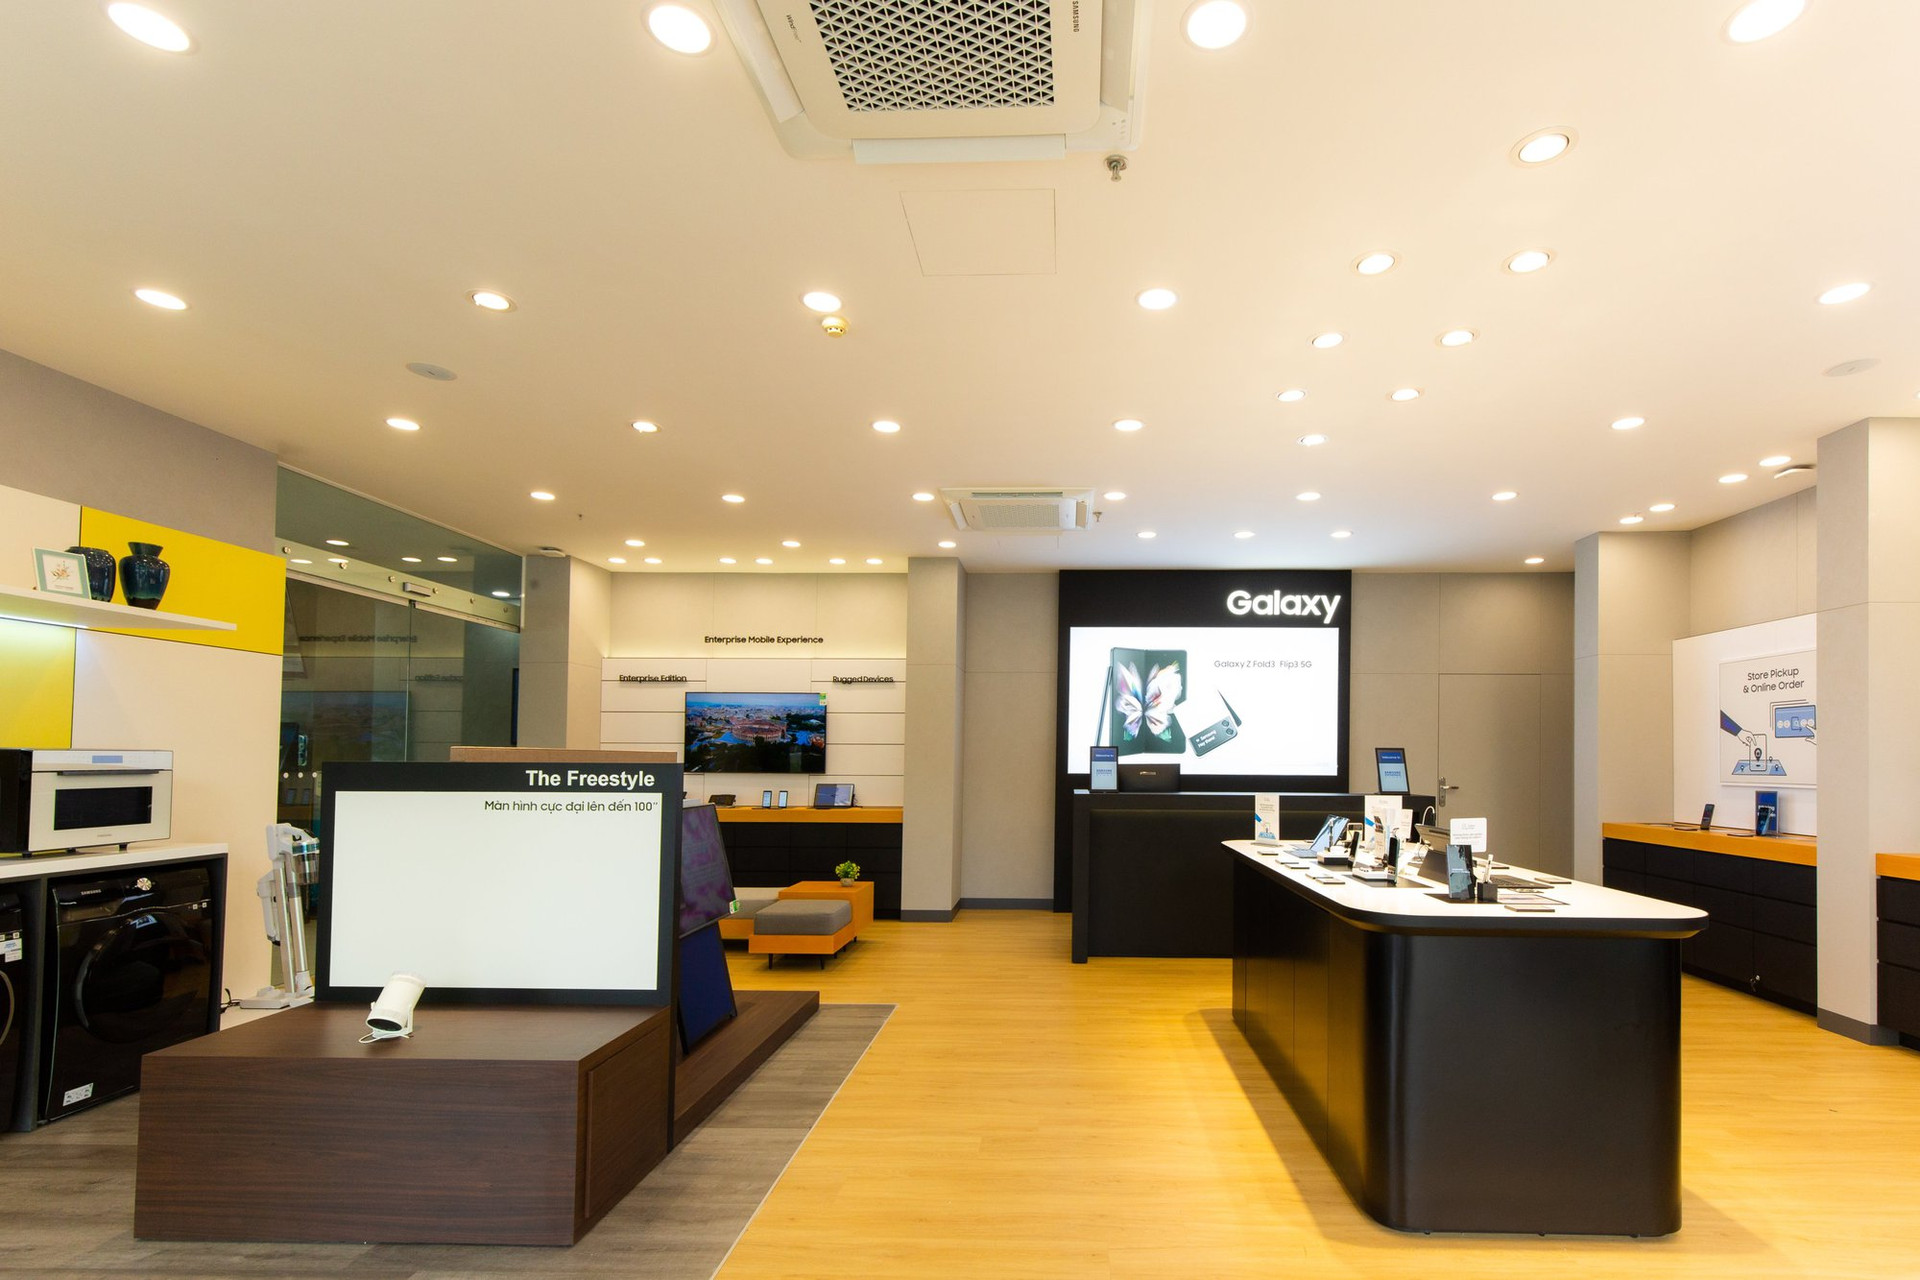 Cửa hàng ủy quyền cao cấp đầu tiên của Samsung tại miền Trung - Ảnh 1.